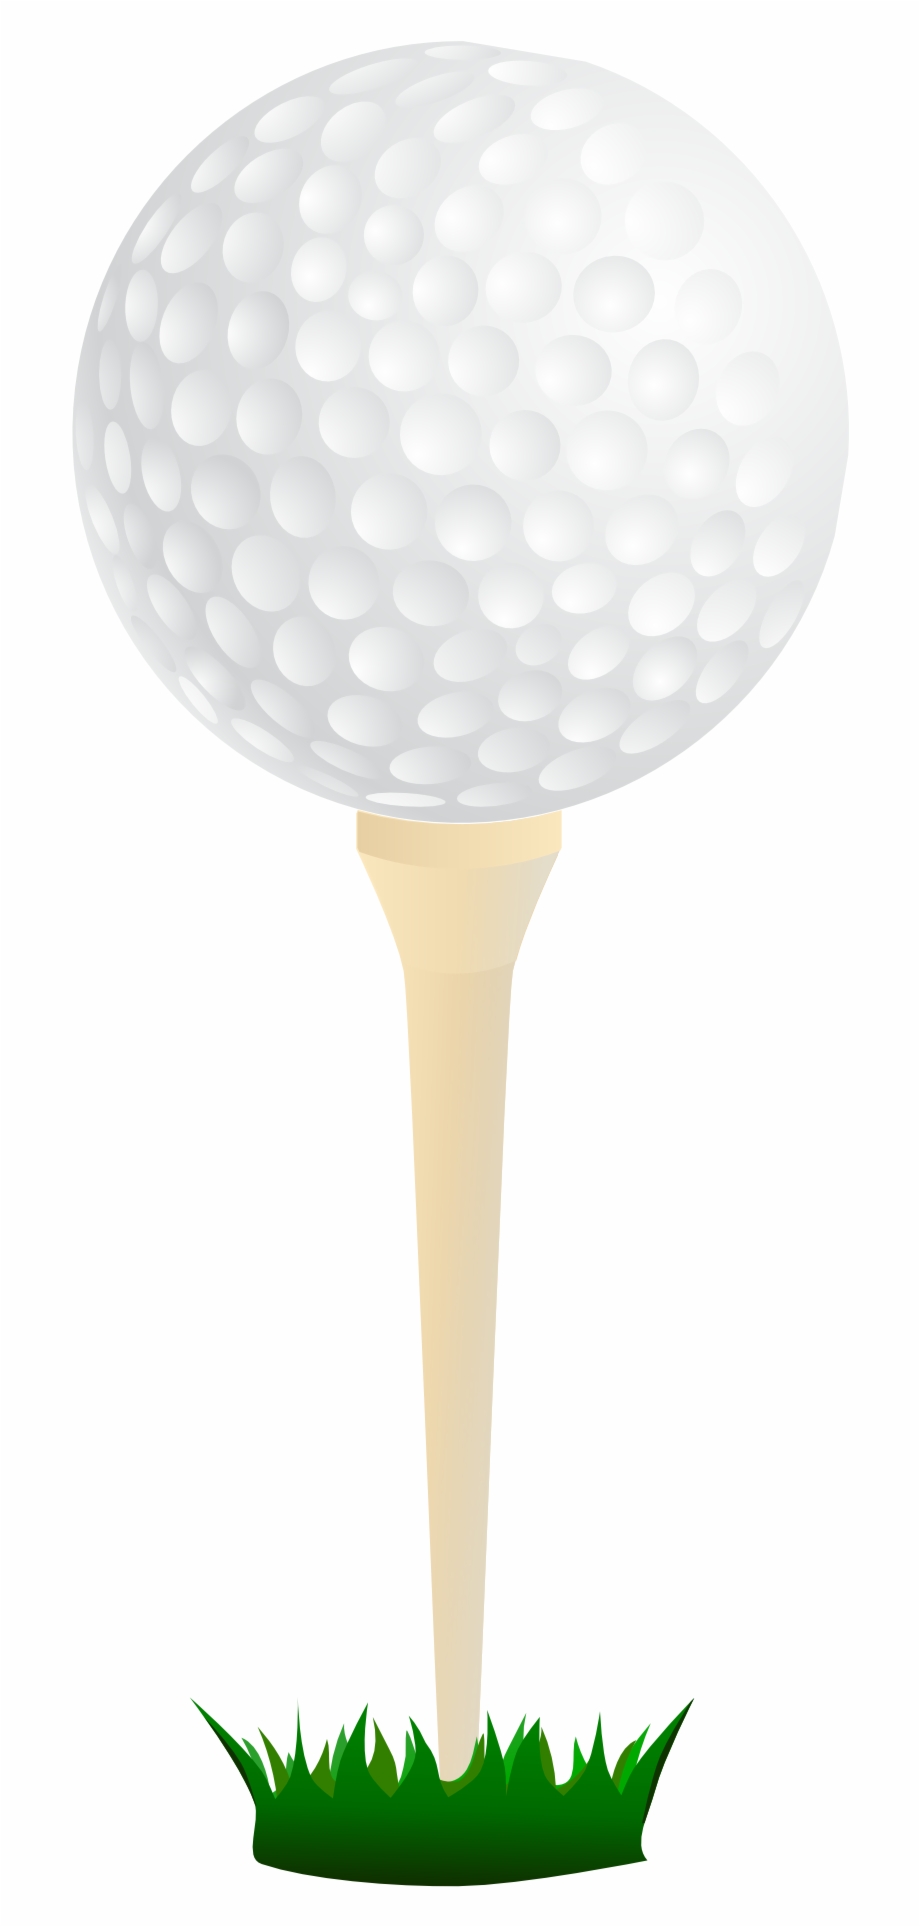 Golf Clip Art Golf Ball On Tee Transparent